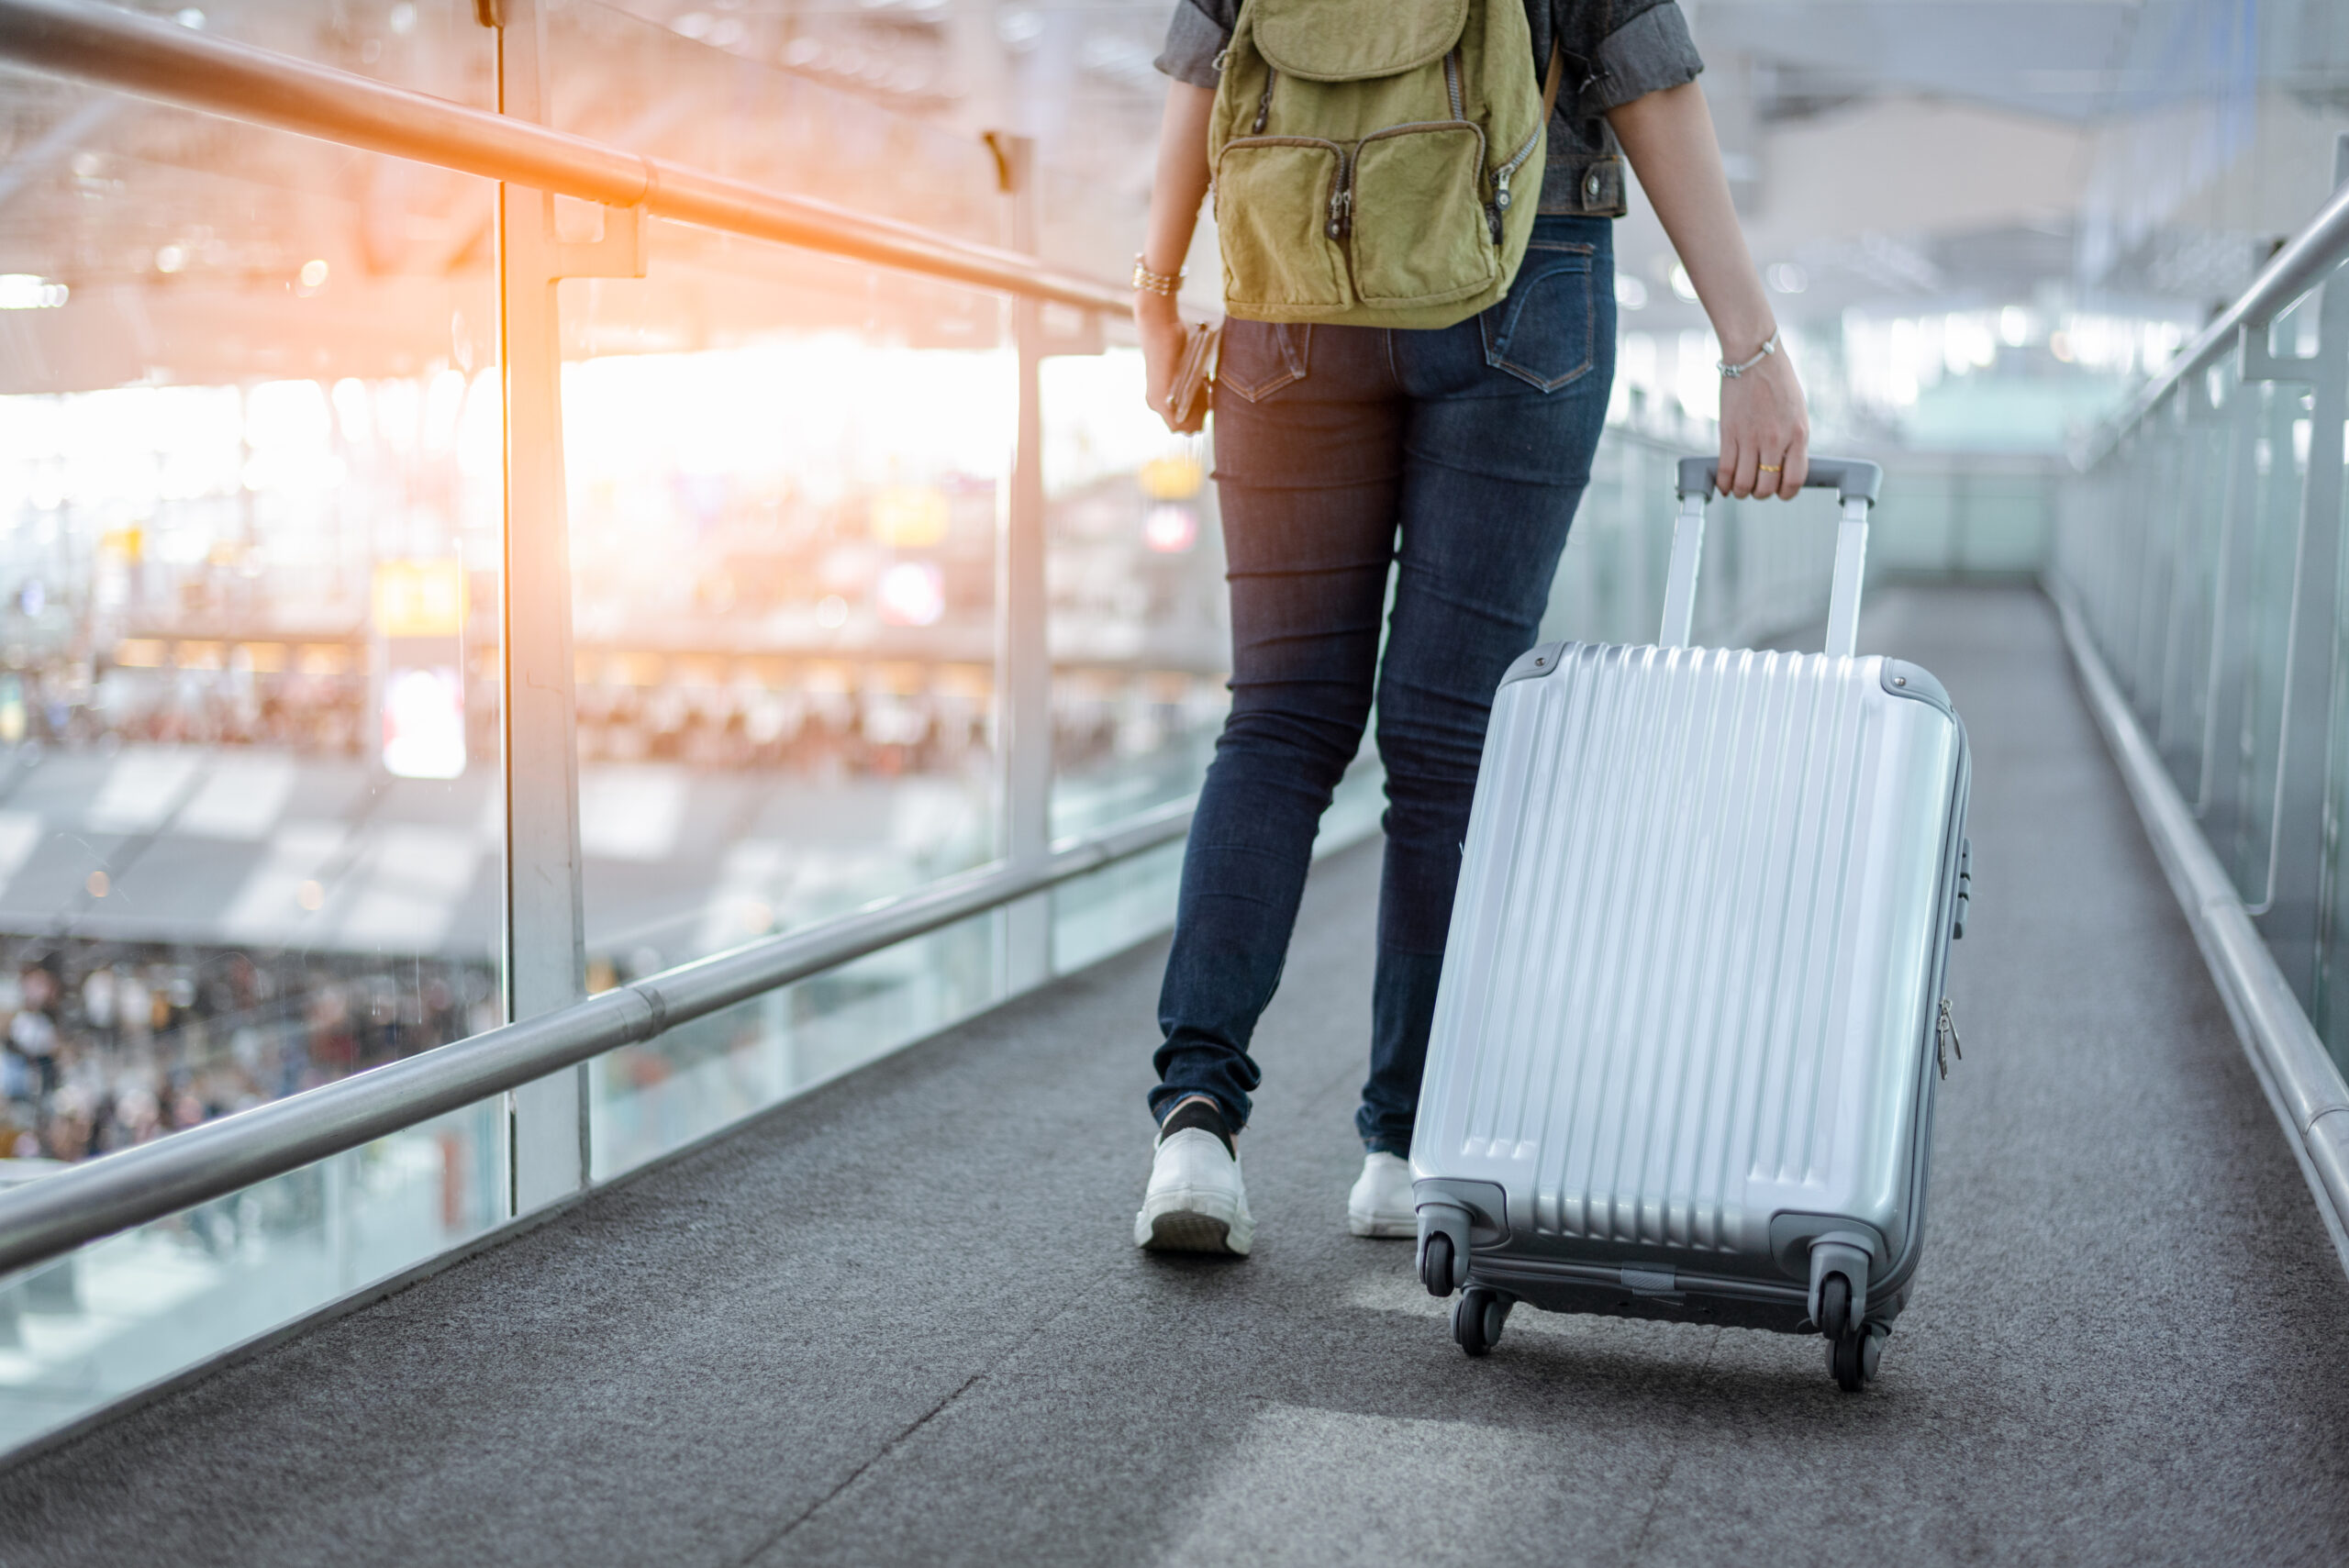 Extravio de bagagem: saiba quais os direitos do passageiro - mulher puxando bagagem em aeroporto